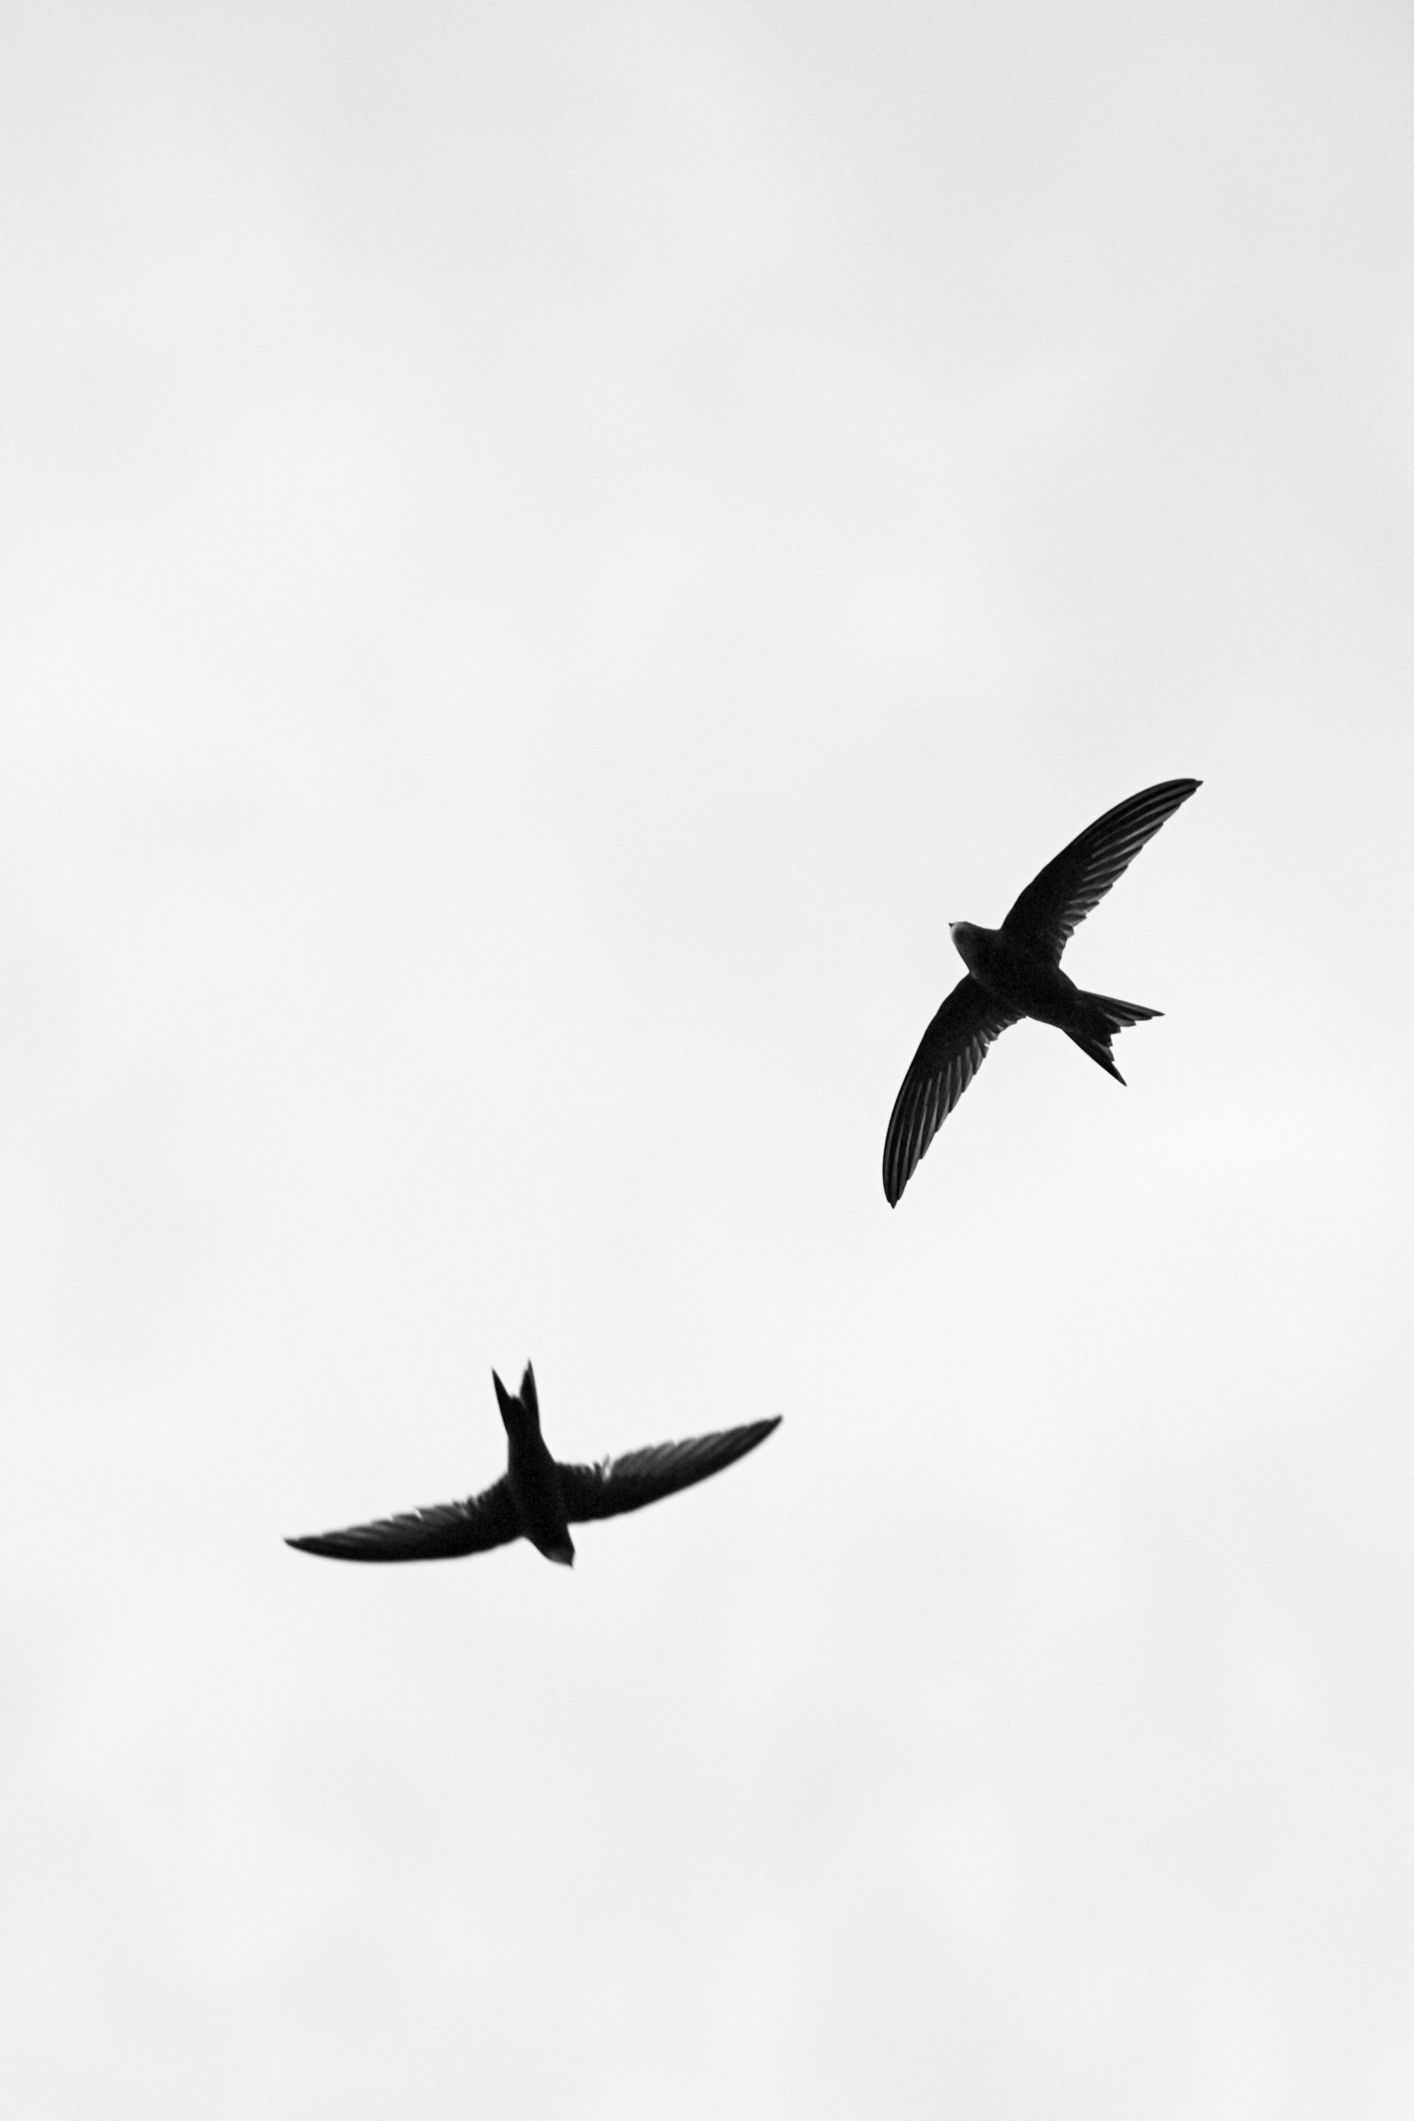 dos golondrinas volando - fotografía en blanco y negro